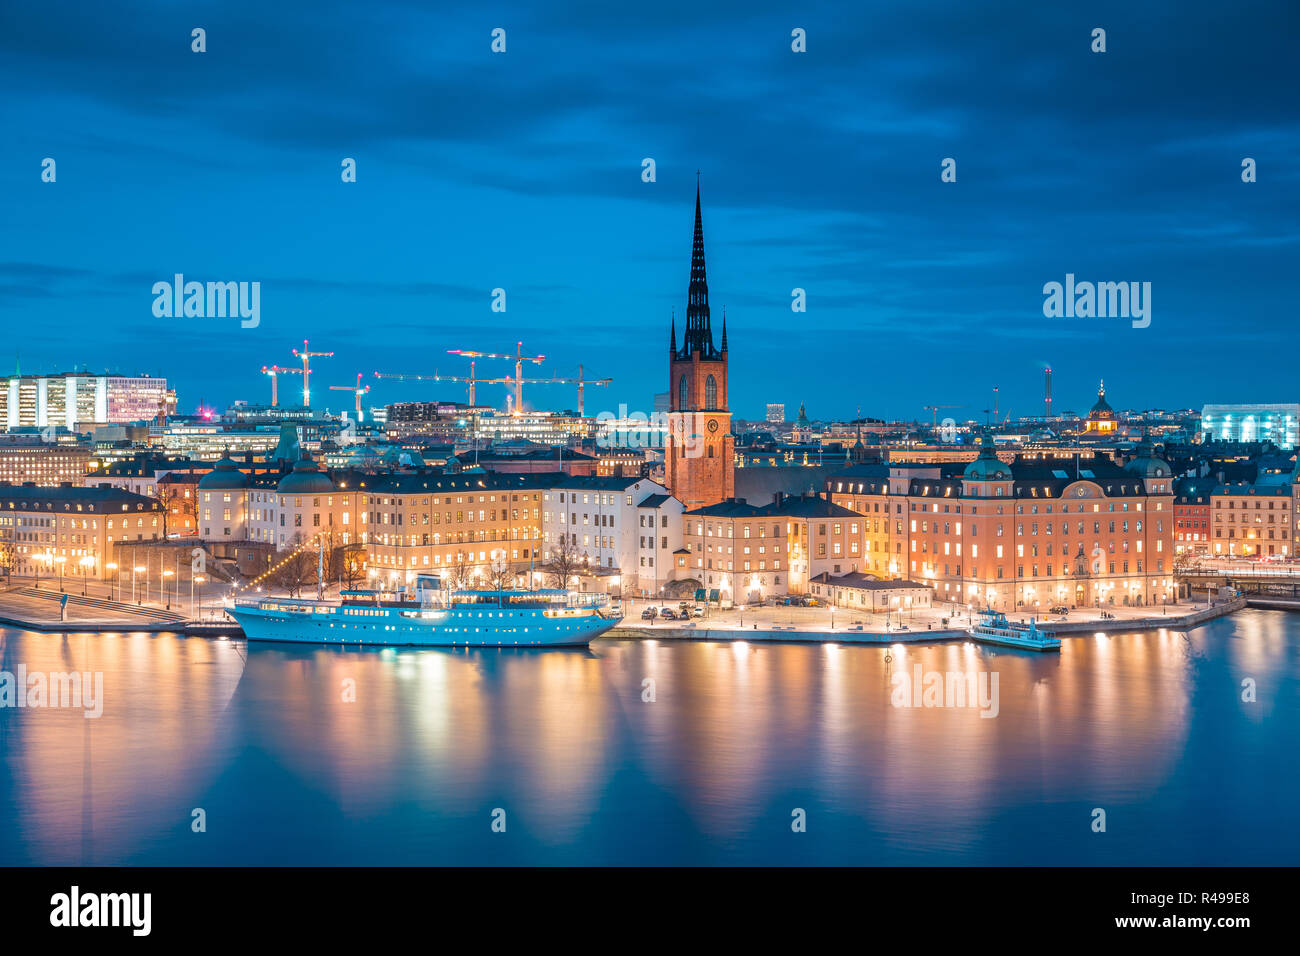 Vue panoramique sur le centre-ville de Stockholm célèbre avec Riddarholmen historique à Gamla Stan la vieille ville au cours de l'heure bleue au crépuscule, Södermalm, central Banque D'Images